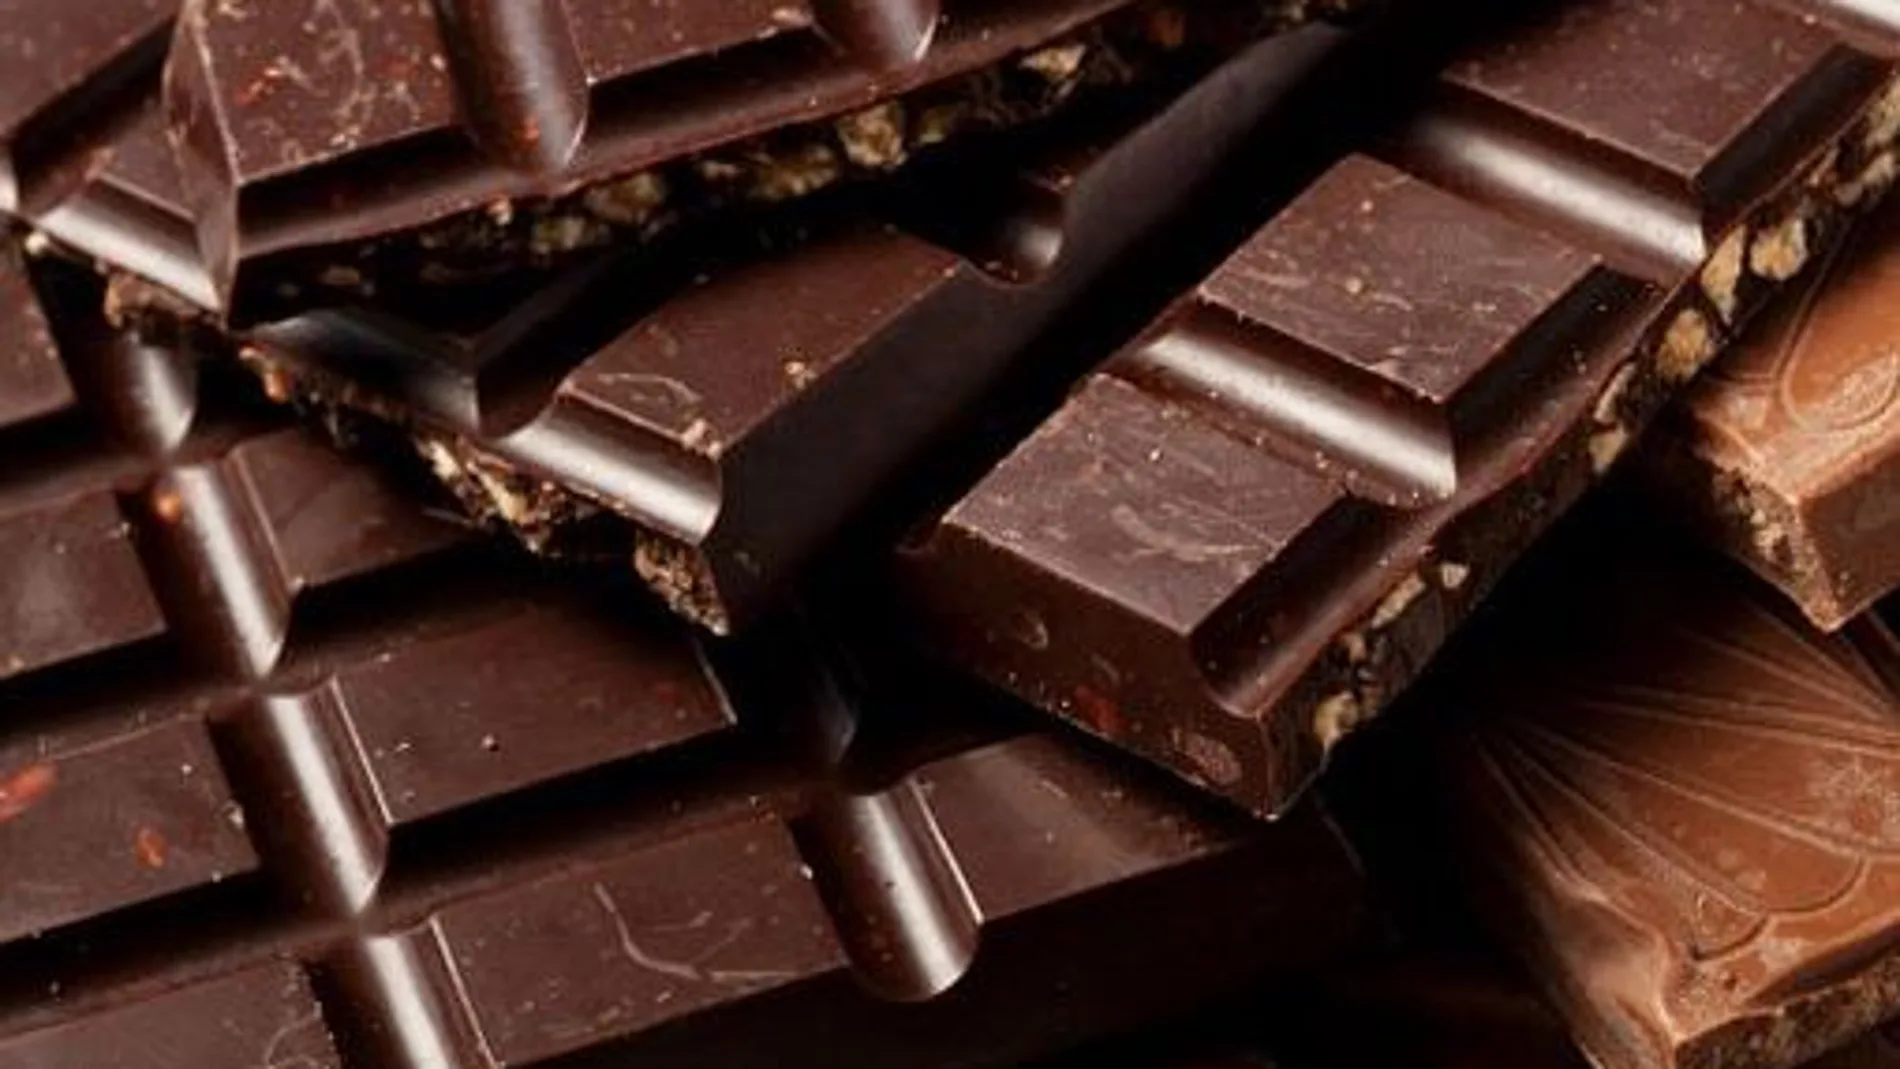 Los polifenoles del cacao producen efectos vasodilatadores que favorecen el control de la tensión arterial.